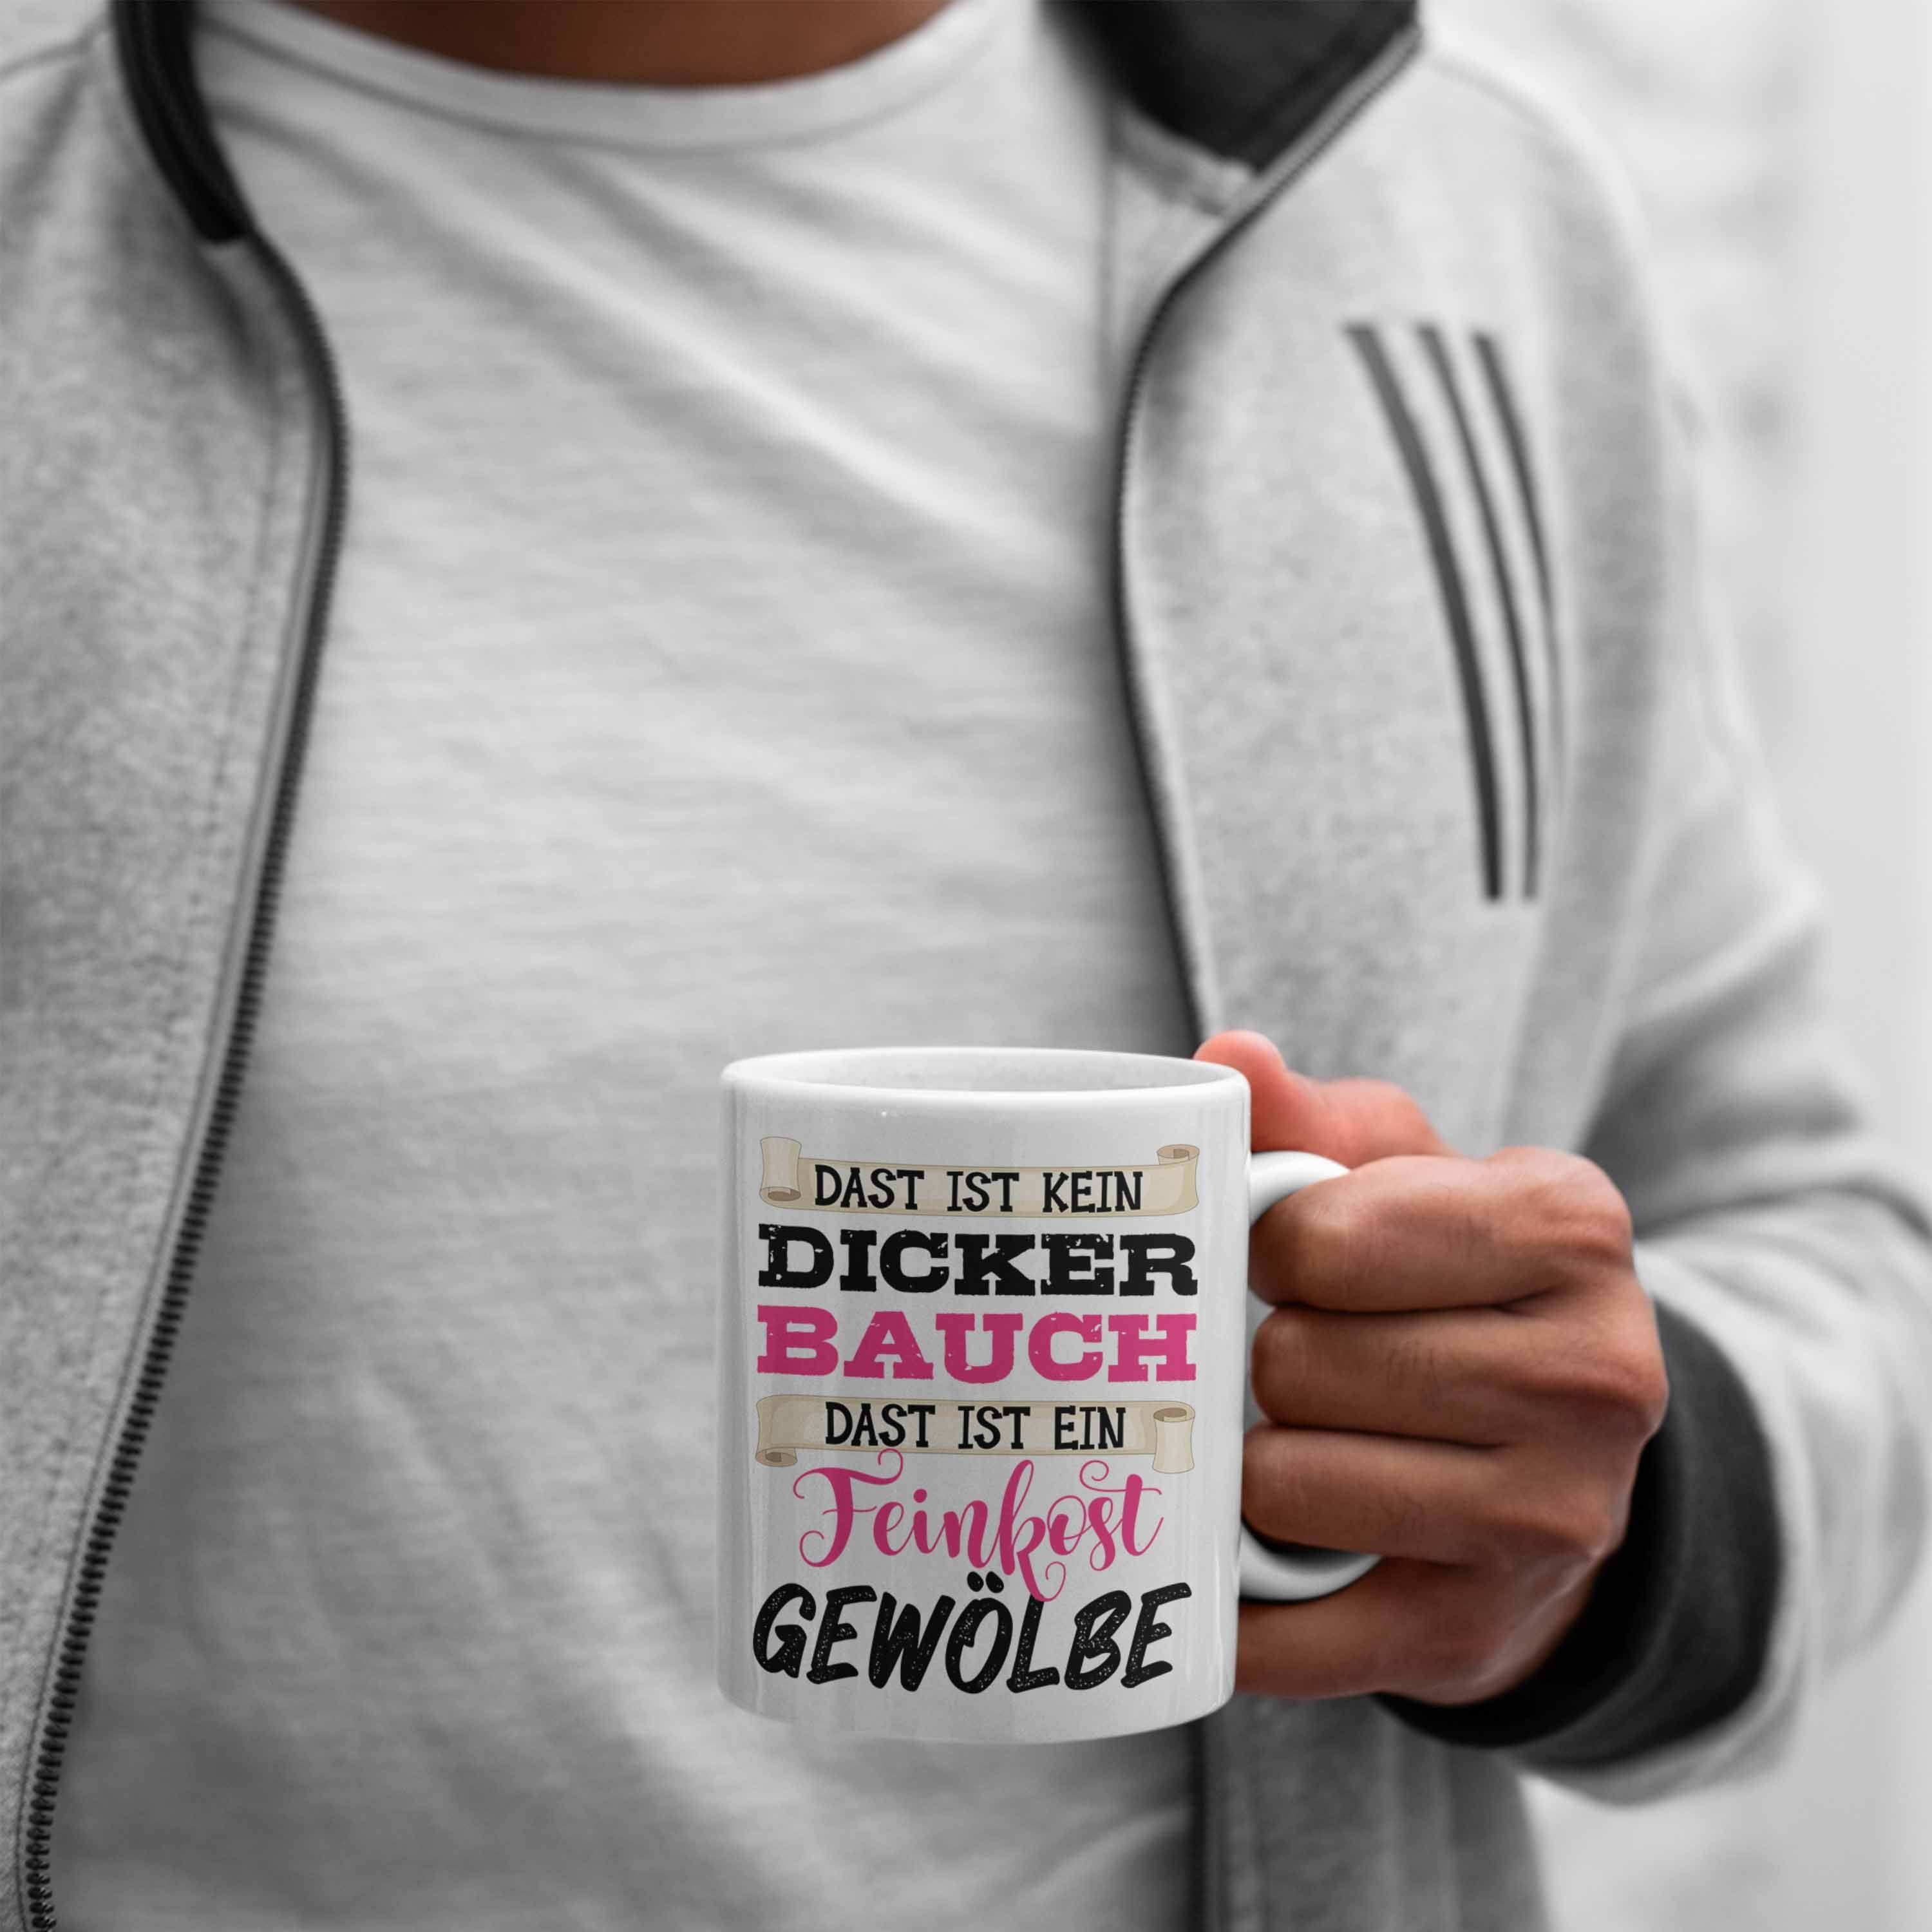 Weiss Dicker Bauch Tasse Trendation Humor - Männer Geschenk Leute Feinkostgewölbe Das Dicke Frauen Ist Tasse Trendation Kein